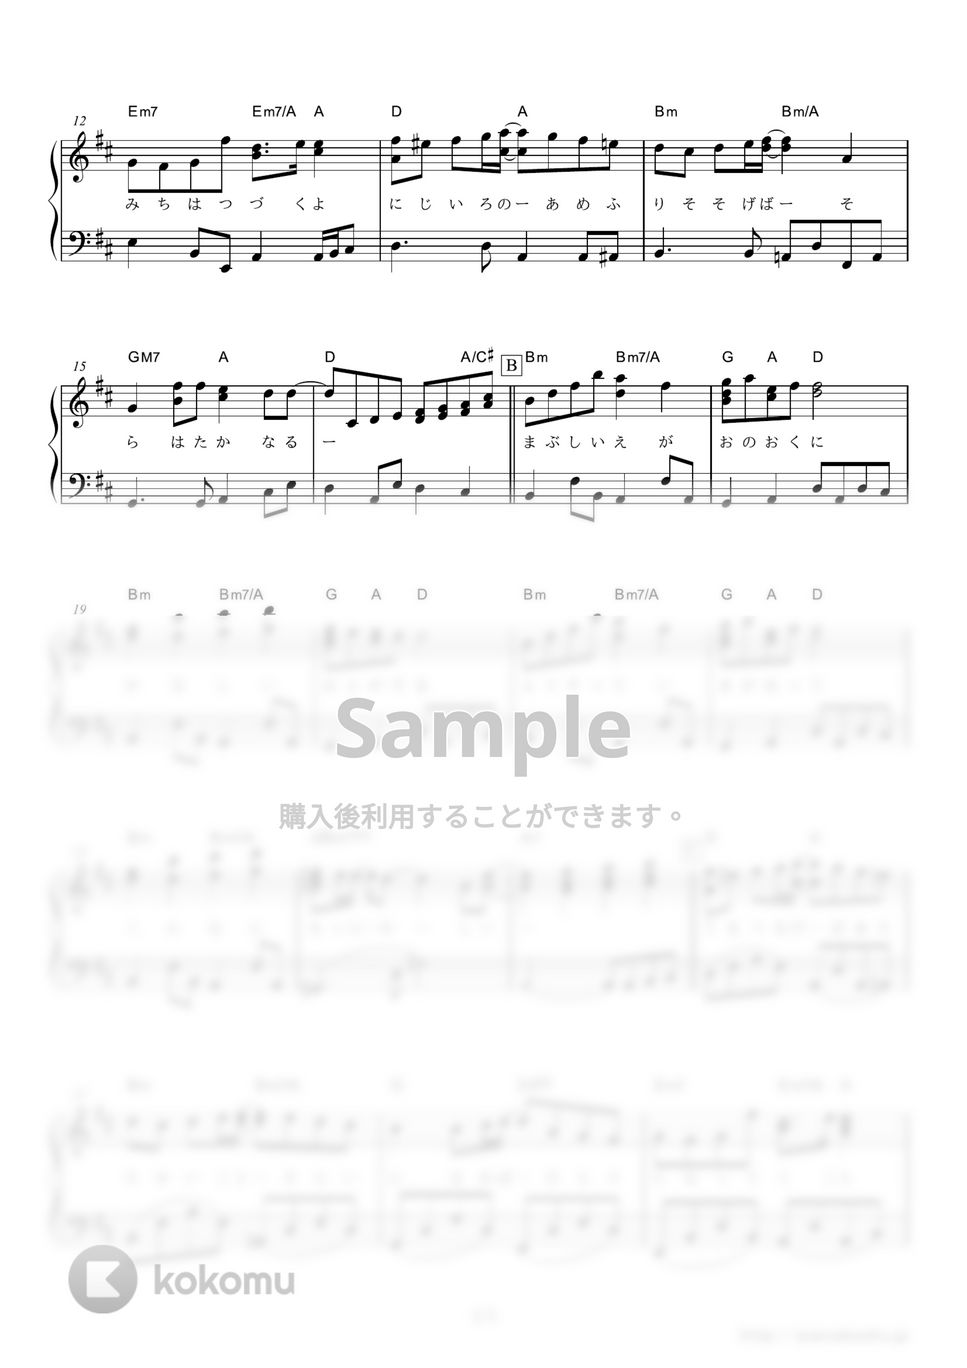 絢香 - にじいろ (NHK連続テレビ小説『花子とアン』主題歌) by ピアノの本棚